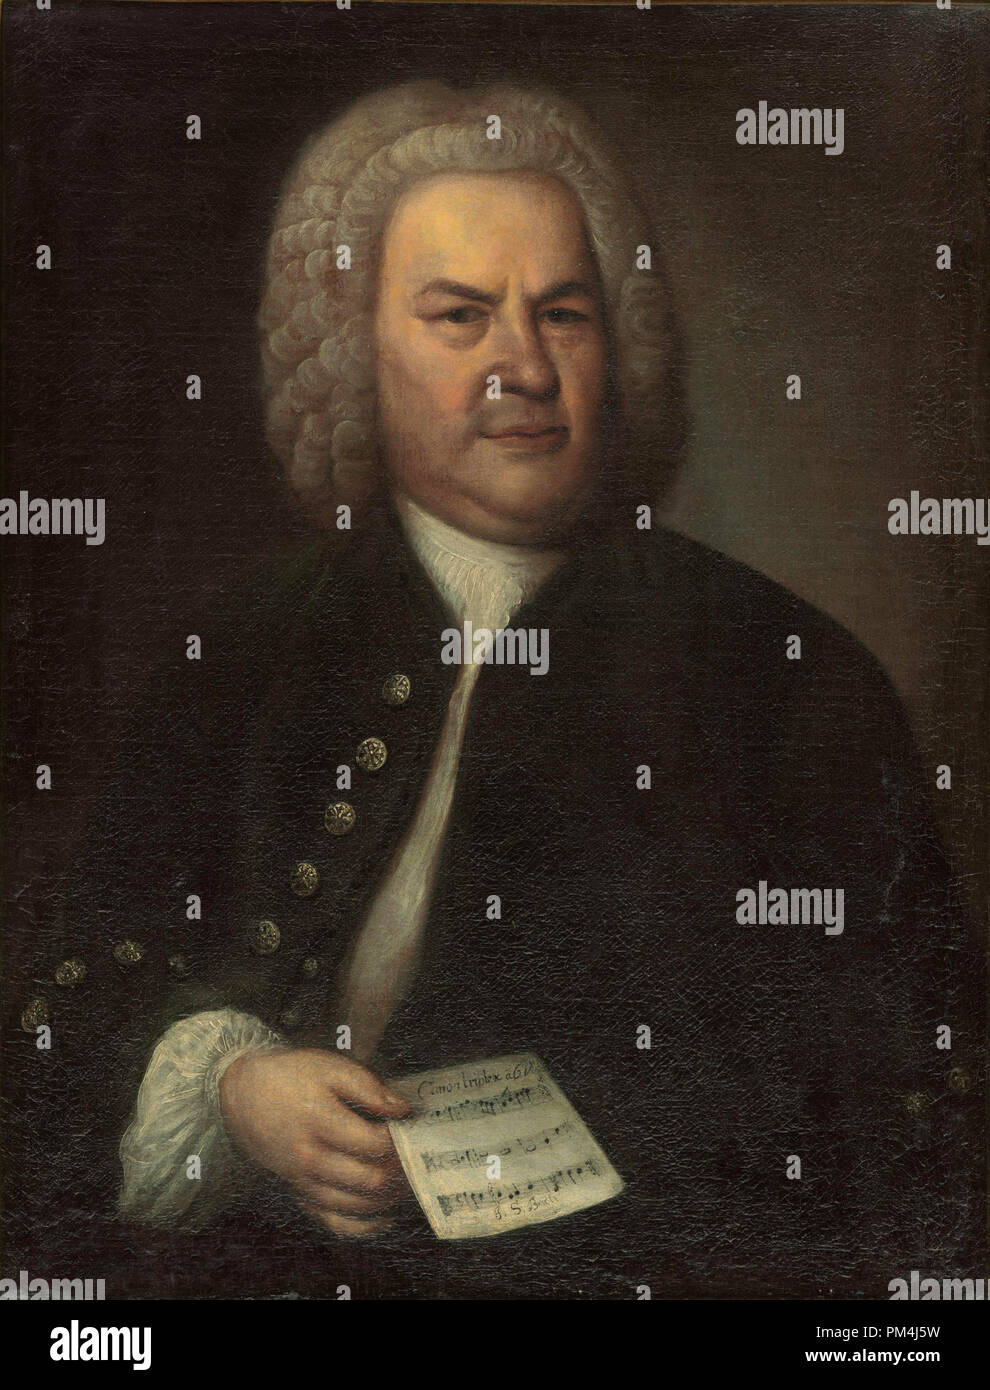 Johann Sebastian Bach (1685-1750) - Gemälde von Elias Gottlob Haußmann 1746. Malerei aktuelle Lage, Stadtgeschichtlichen Museum Leipzig, Deutschland Datei Referenz Nr. 1003 541 THA Stockfoto